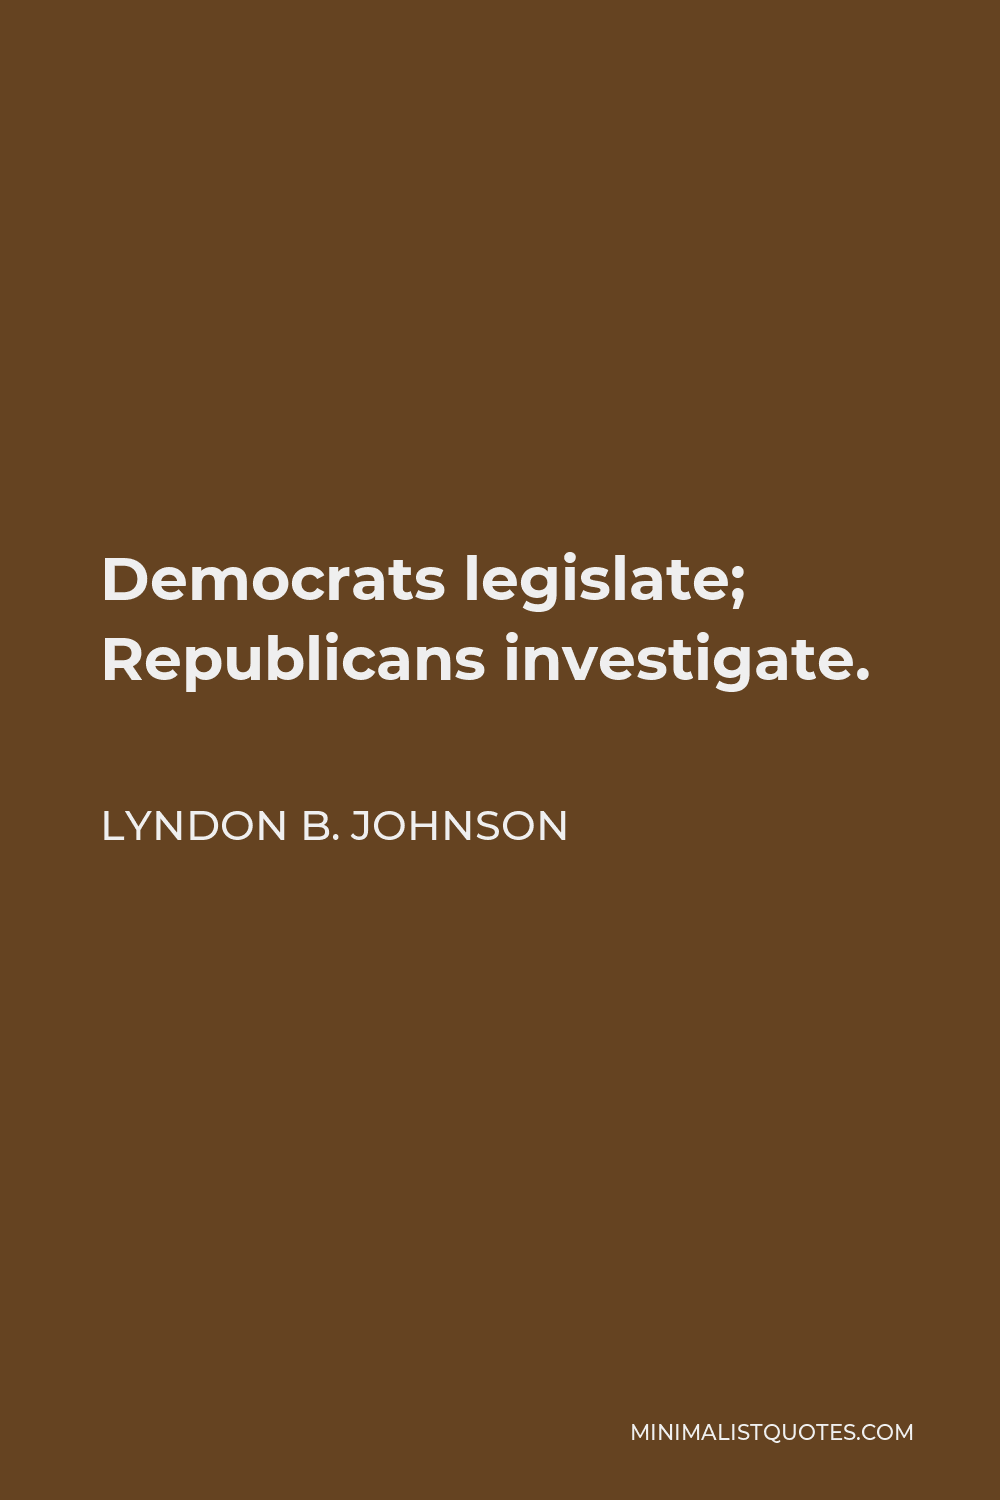 Lyndon B. Johnson Quote - Democrats legislate; Republicans investigate.